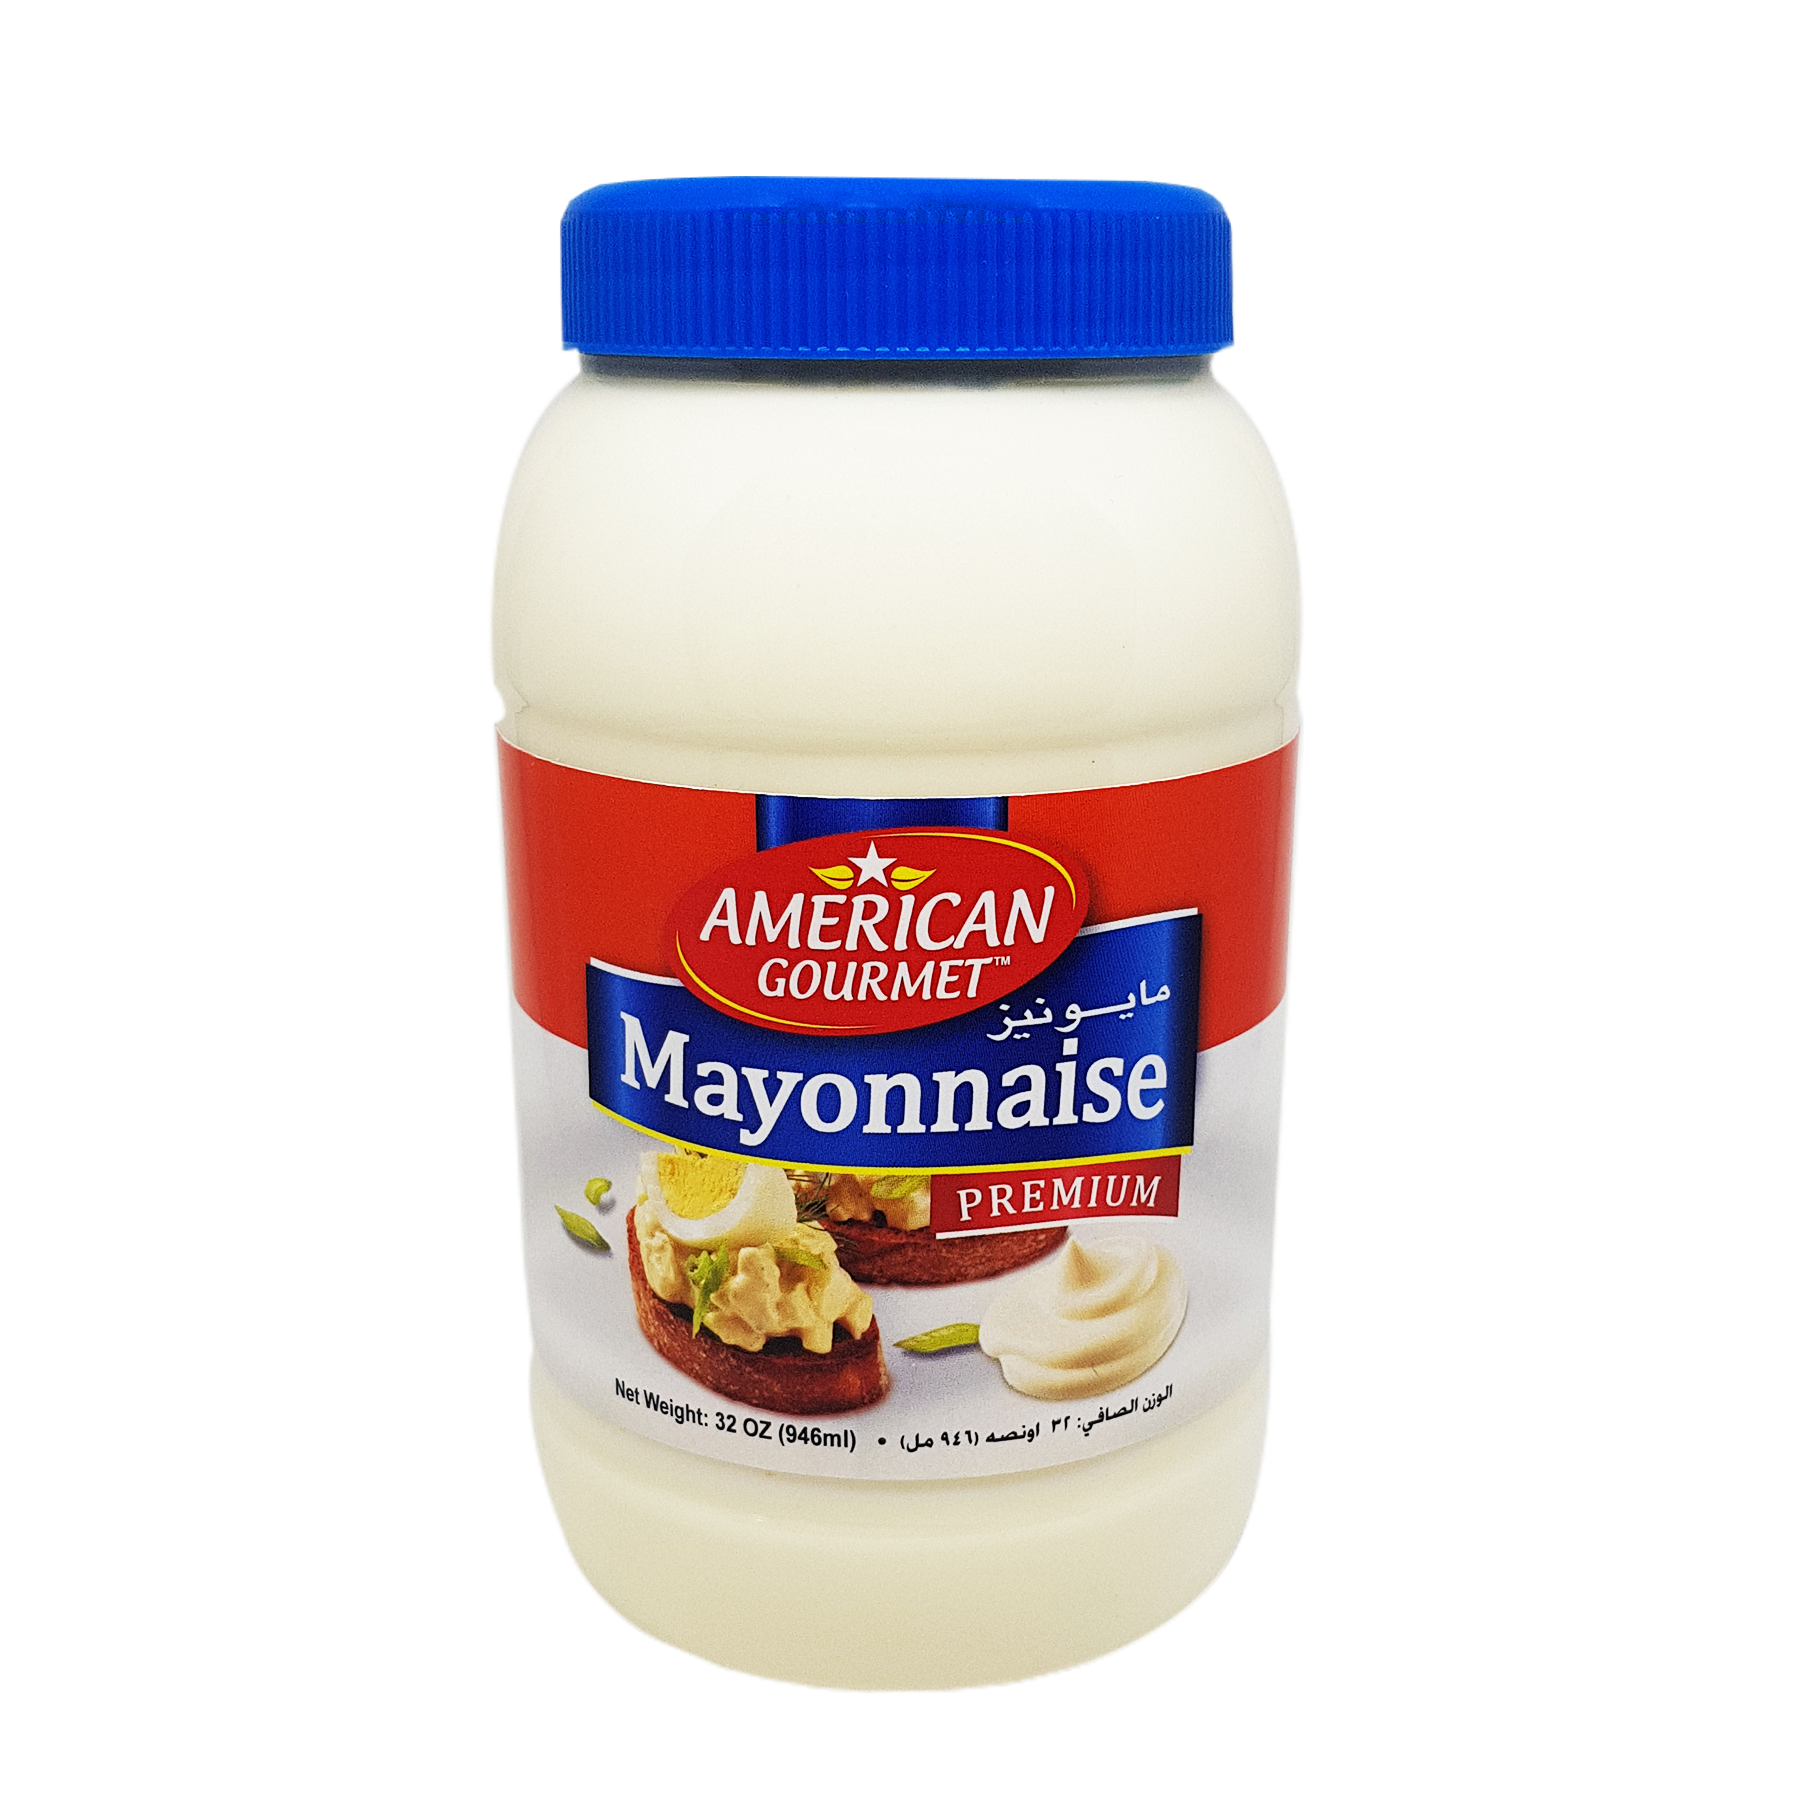 Mayonnaise PNG